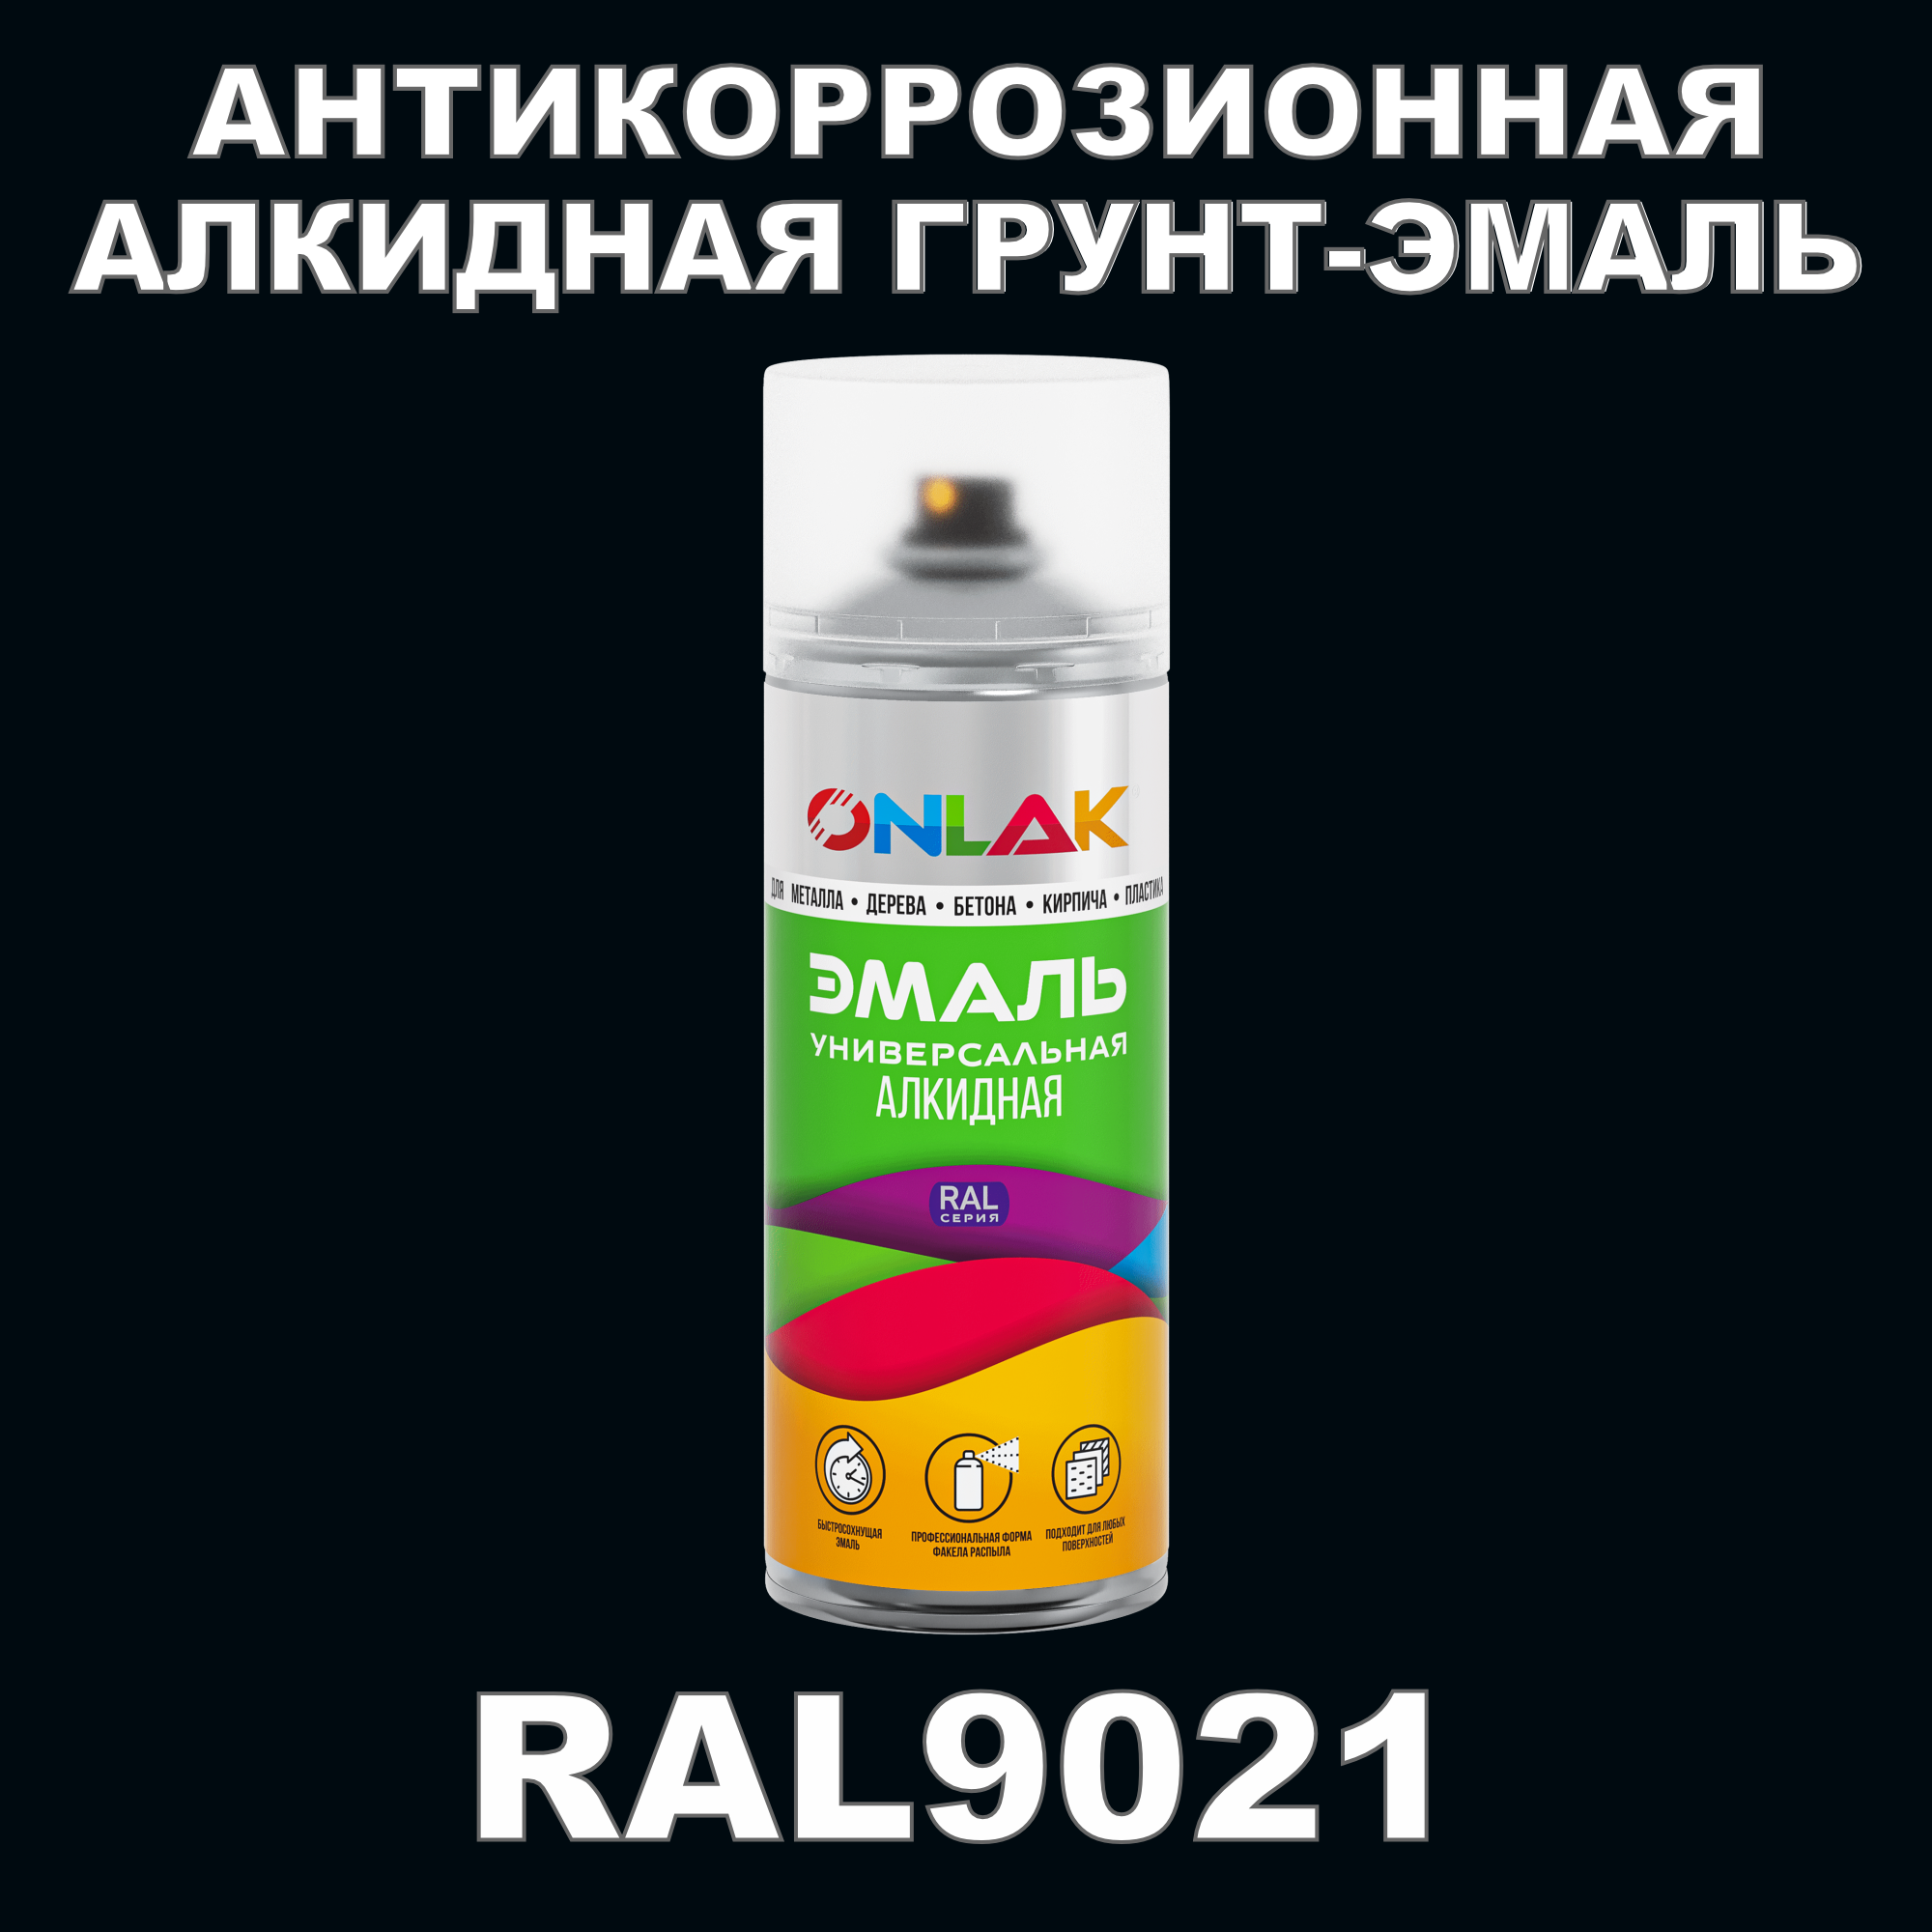 Антикоррозионная грунт-эмаль ONLAK RAL9021 полуматовая для металла и защиты от ржавчины